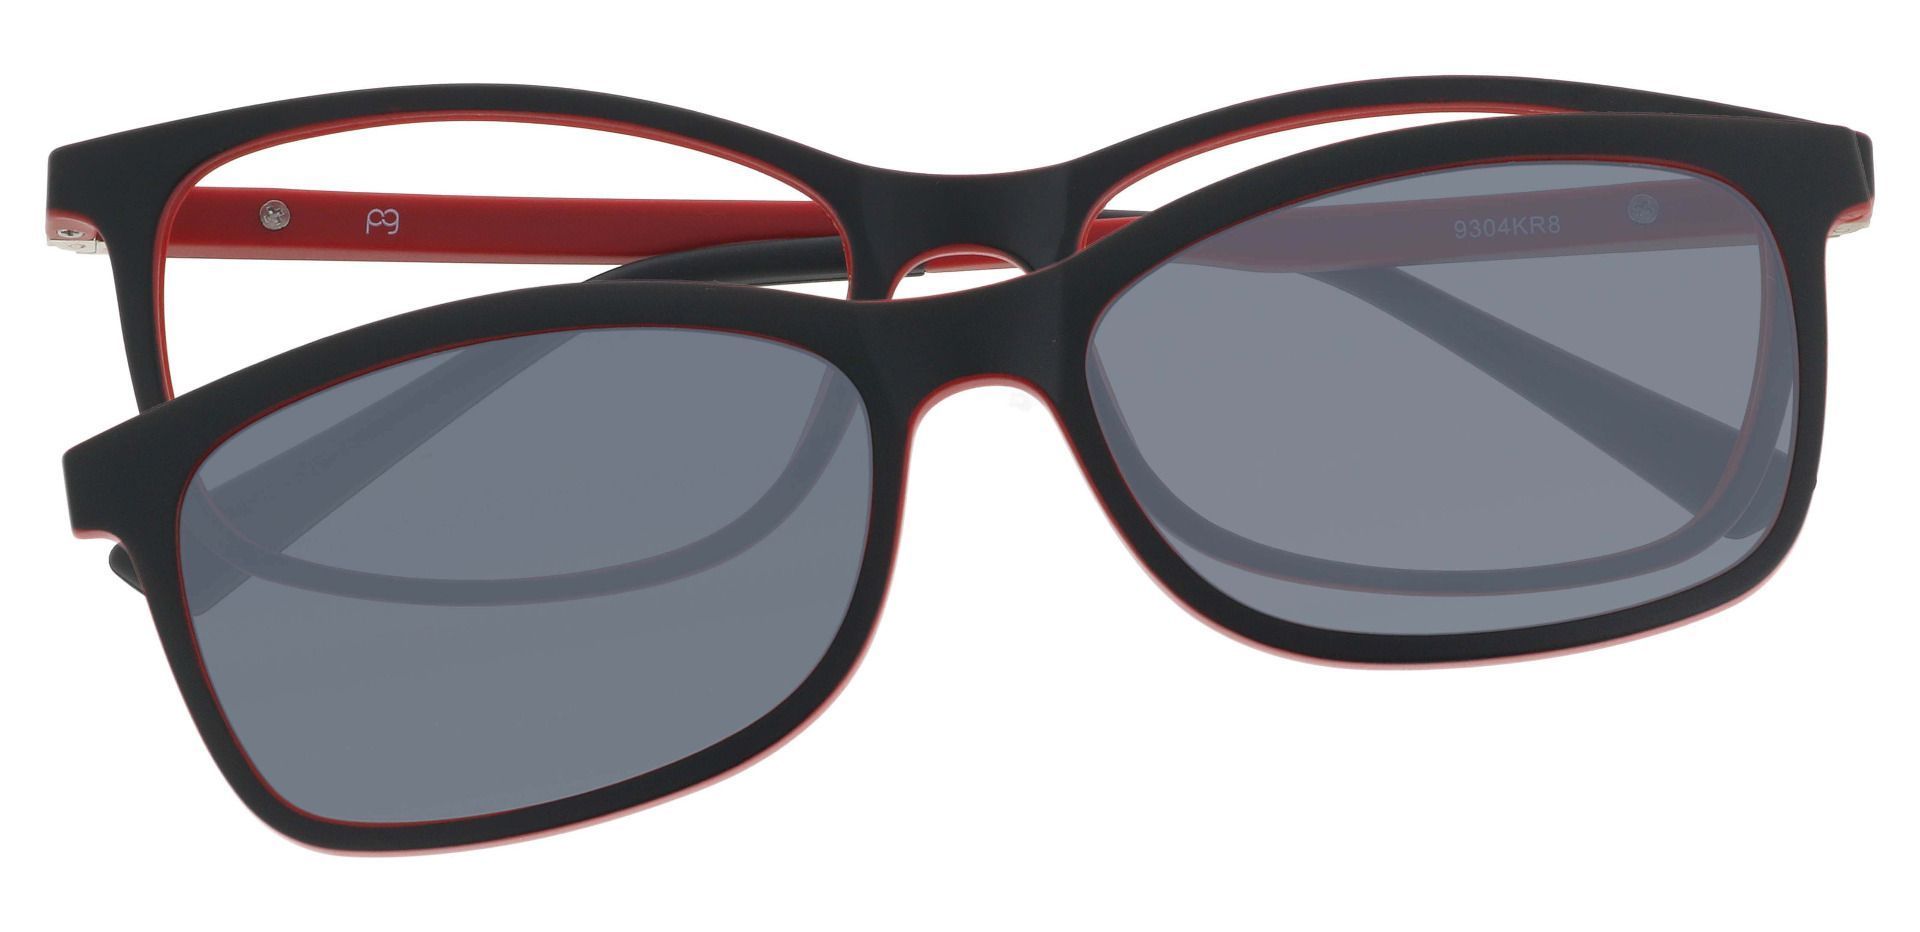 Segura Oval Non-Rx Glasses - Red